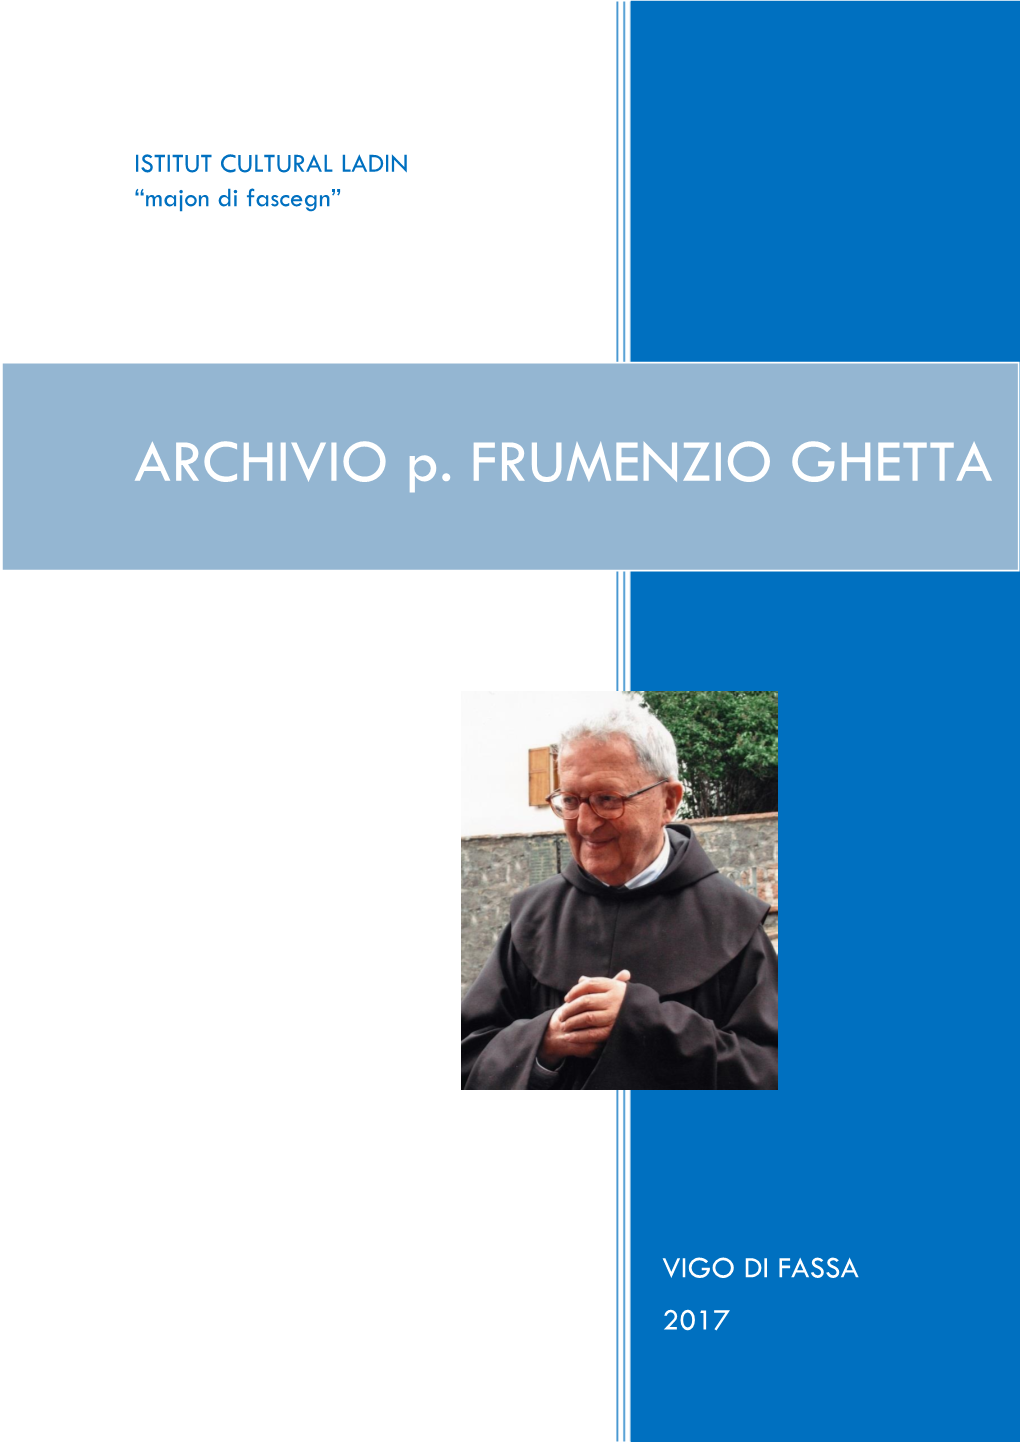 ARCHIVIO P. FRUMENZIO GHETTA